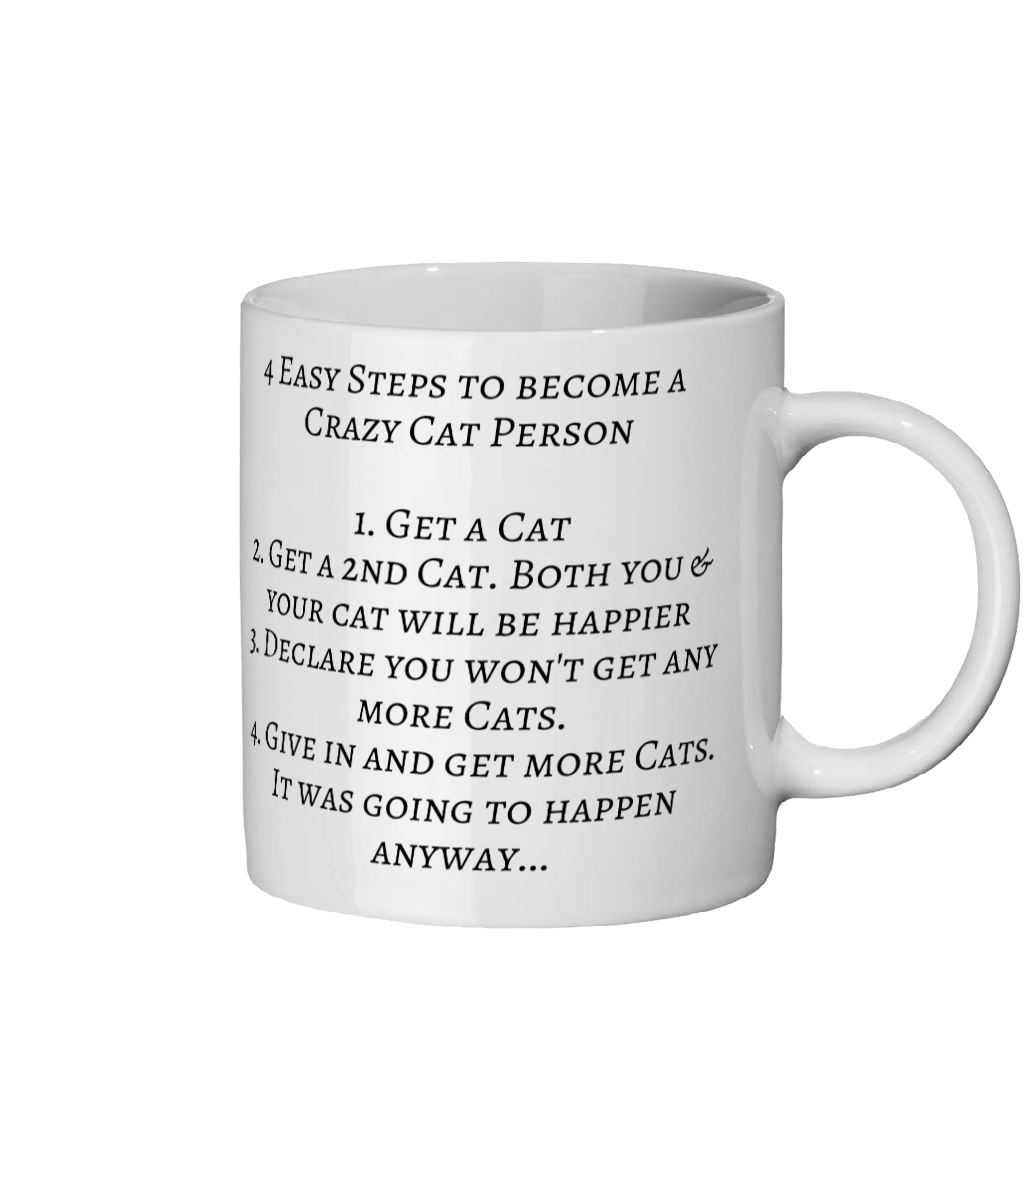 4 Easy Steps to become a Crazy Cat Person - Ceramic Mug